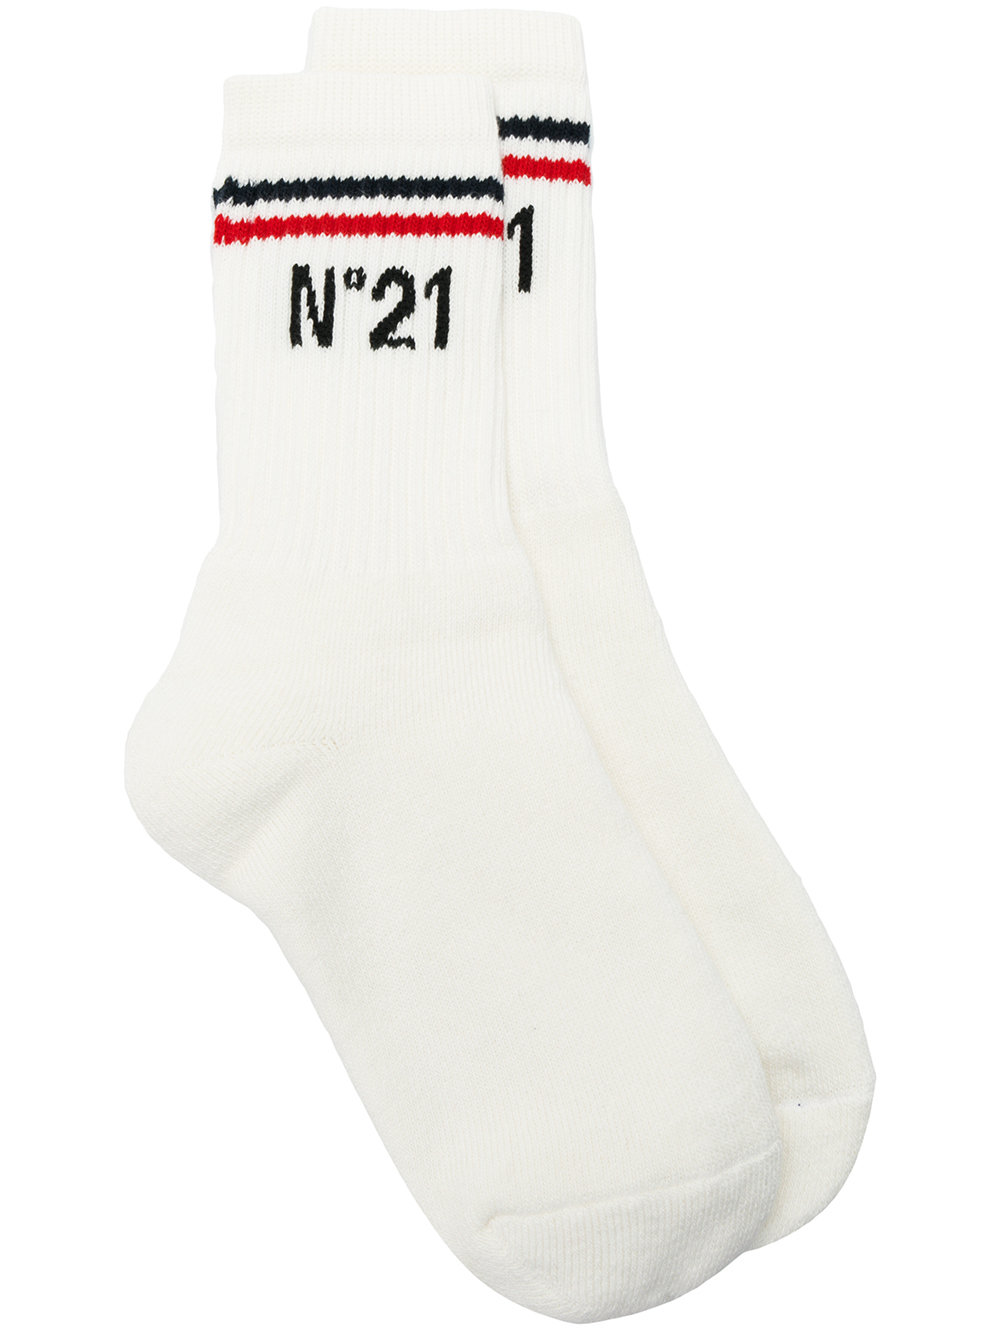 Мода. Nº21 носки с логотипом, 5 277 ₽